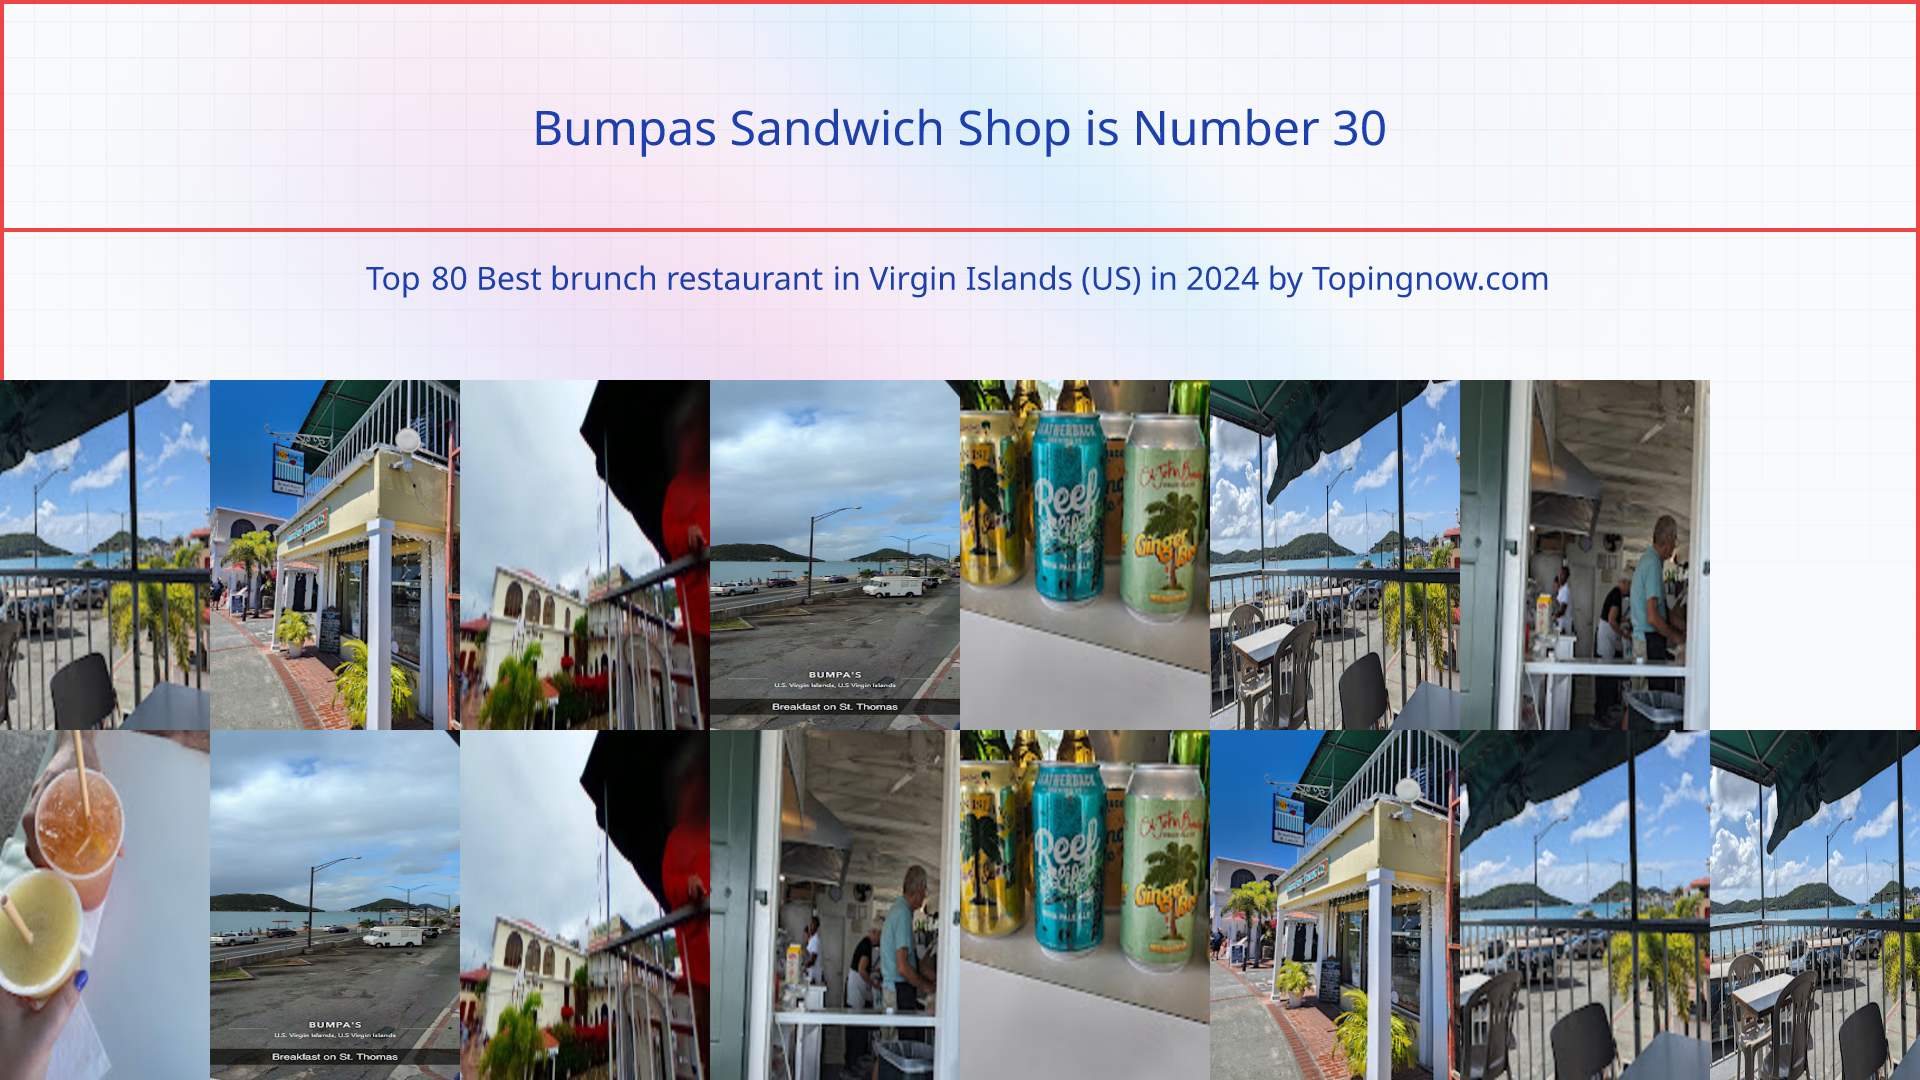 Bumpas Sandwich Shop: Top 80 Best brunch restaurant in Virgin Islands (US) in 2024